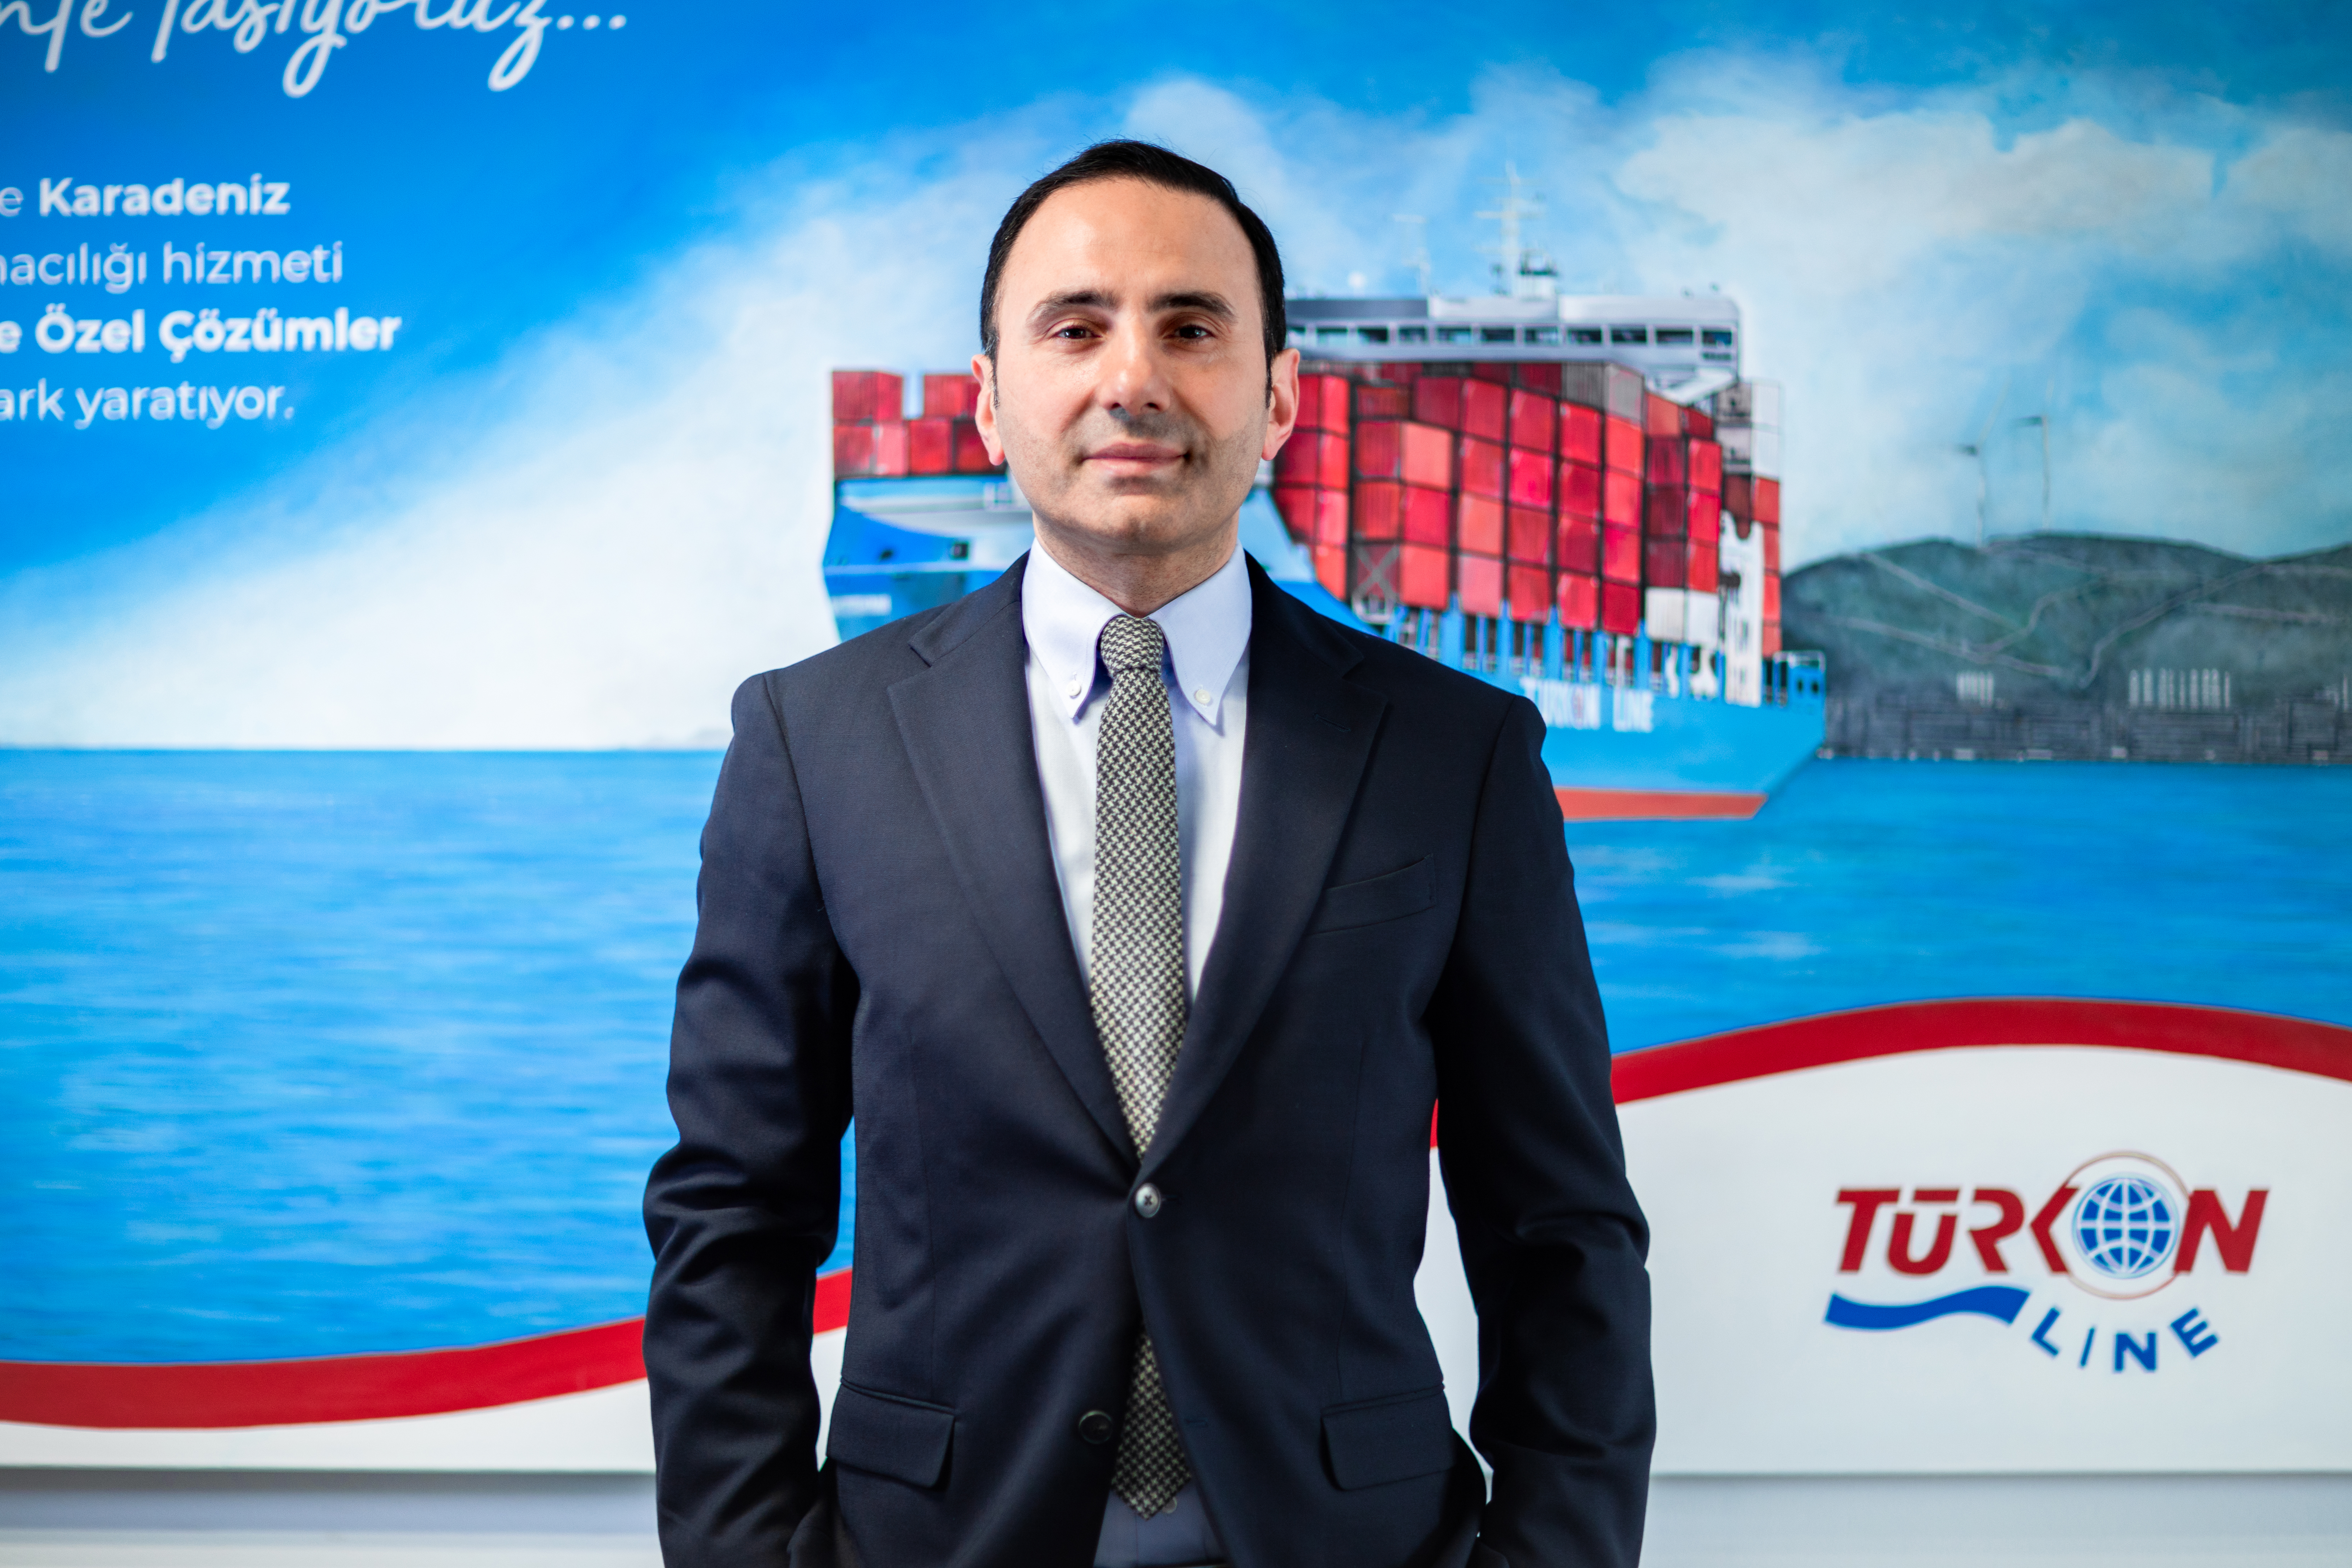 Turkon Line CEO Alkın Kalkavan